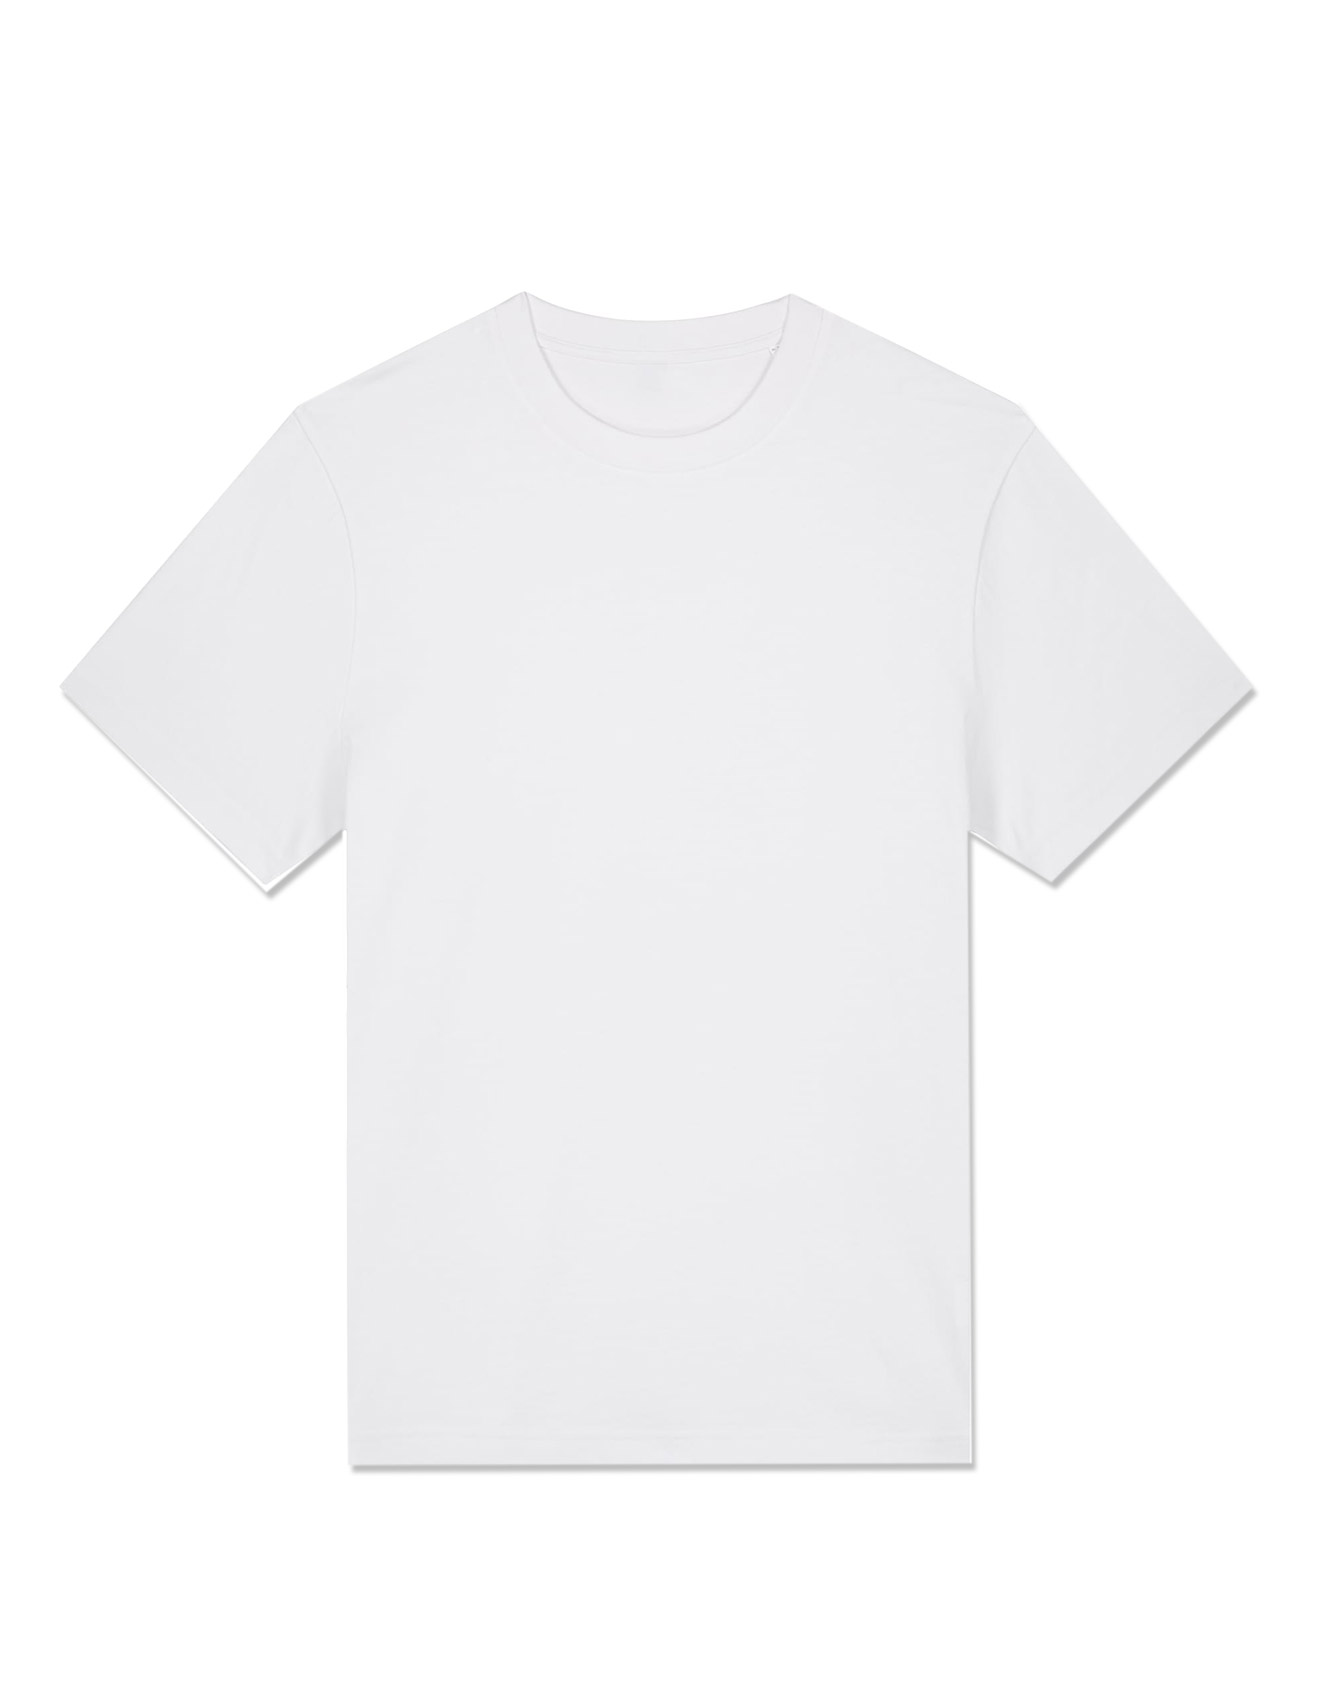 STANLEY/STELLA – Sparker 2.0 unisex t-shirt